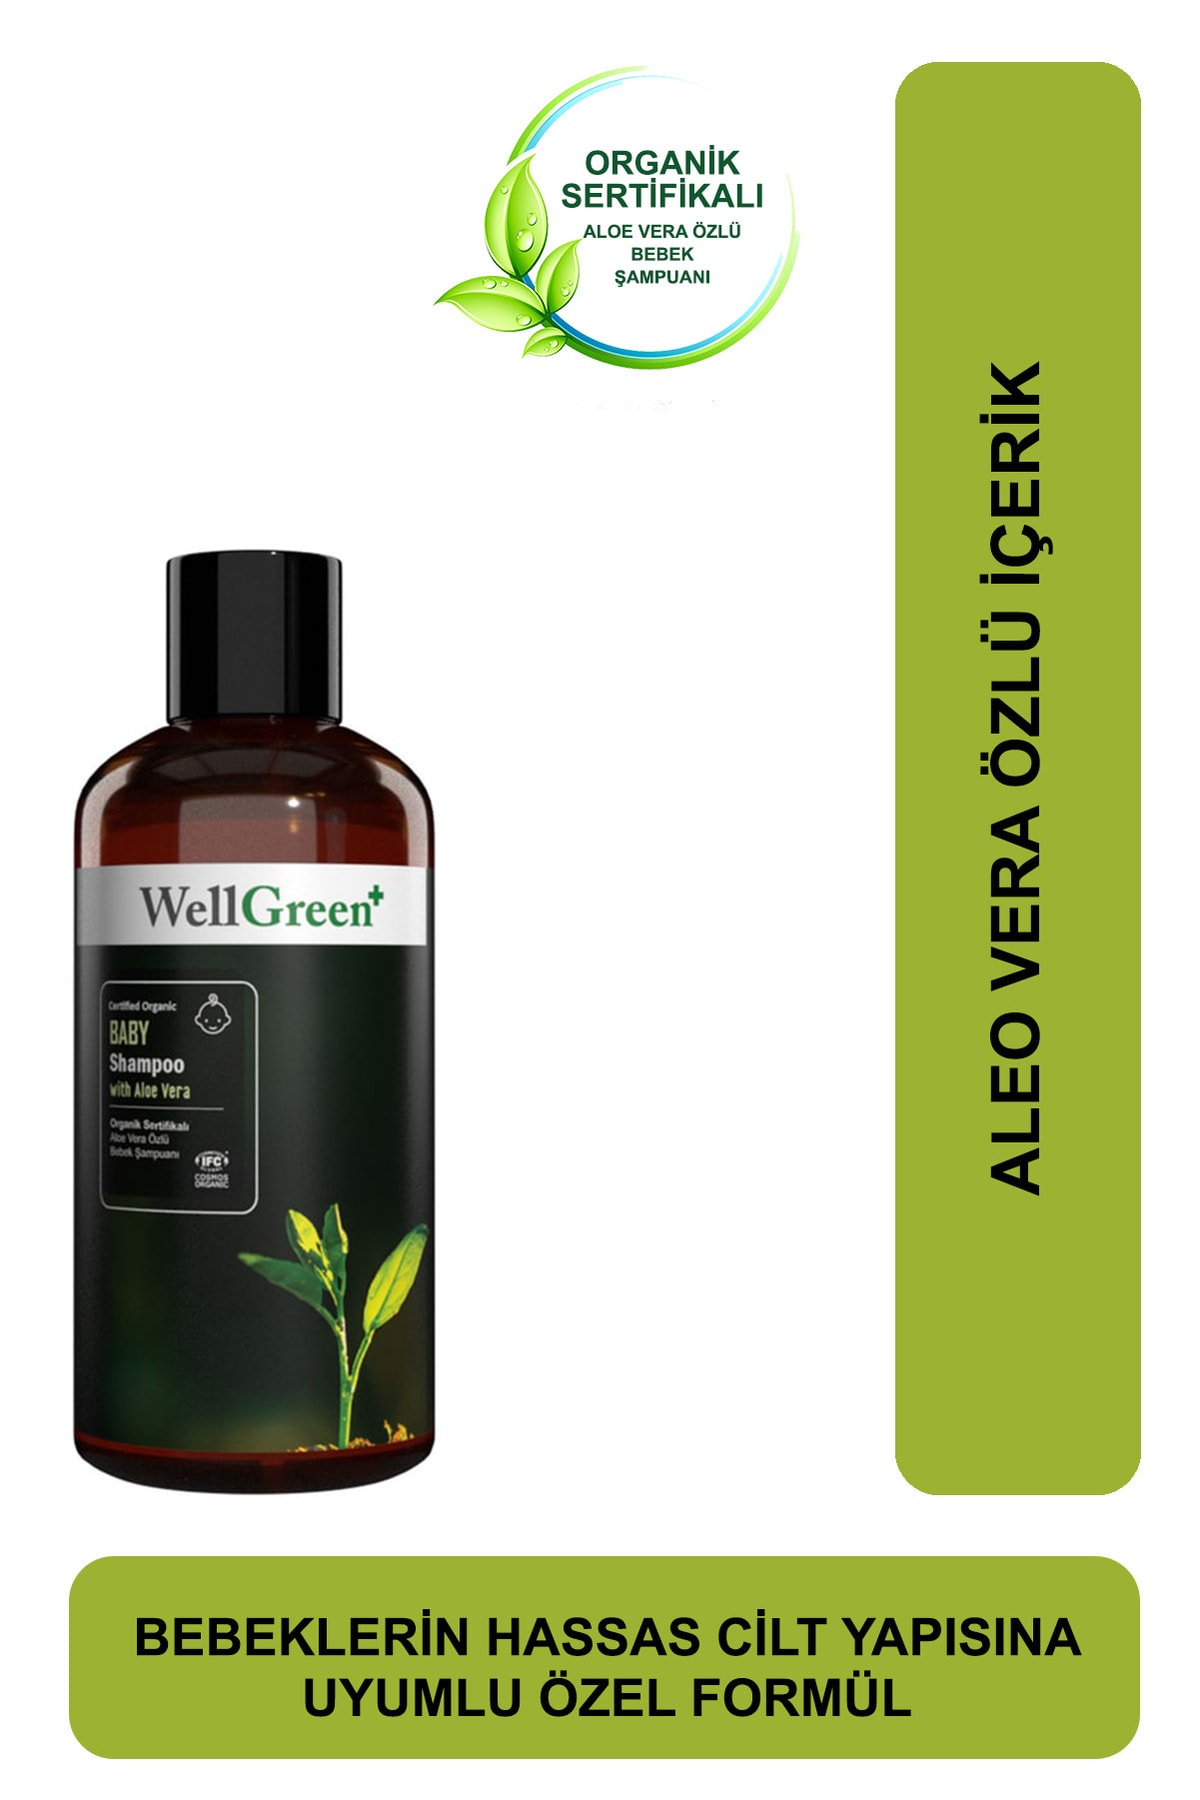 WellGreen Organik Aloe Vera Özlü Bebek Şampuanı - 250ml